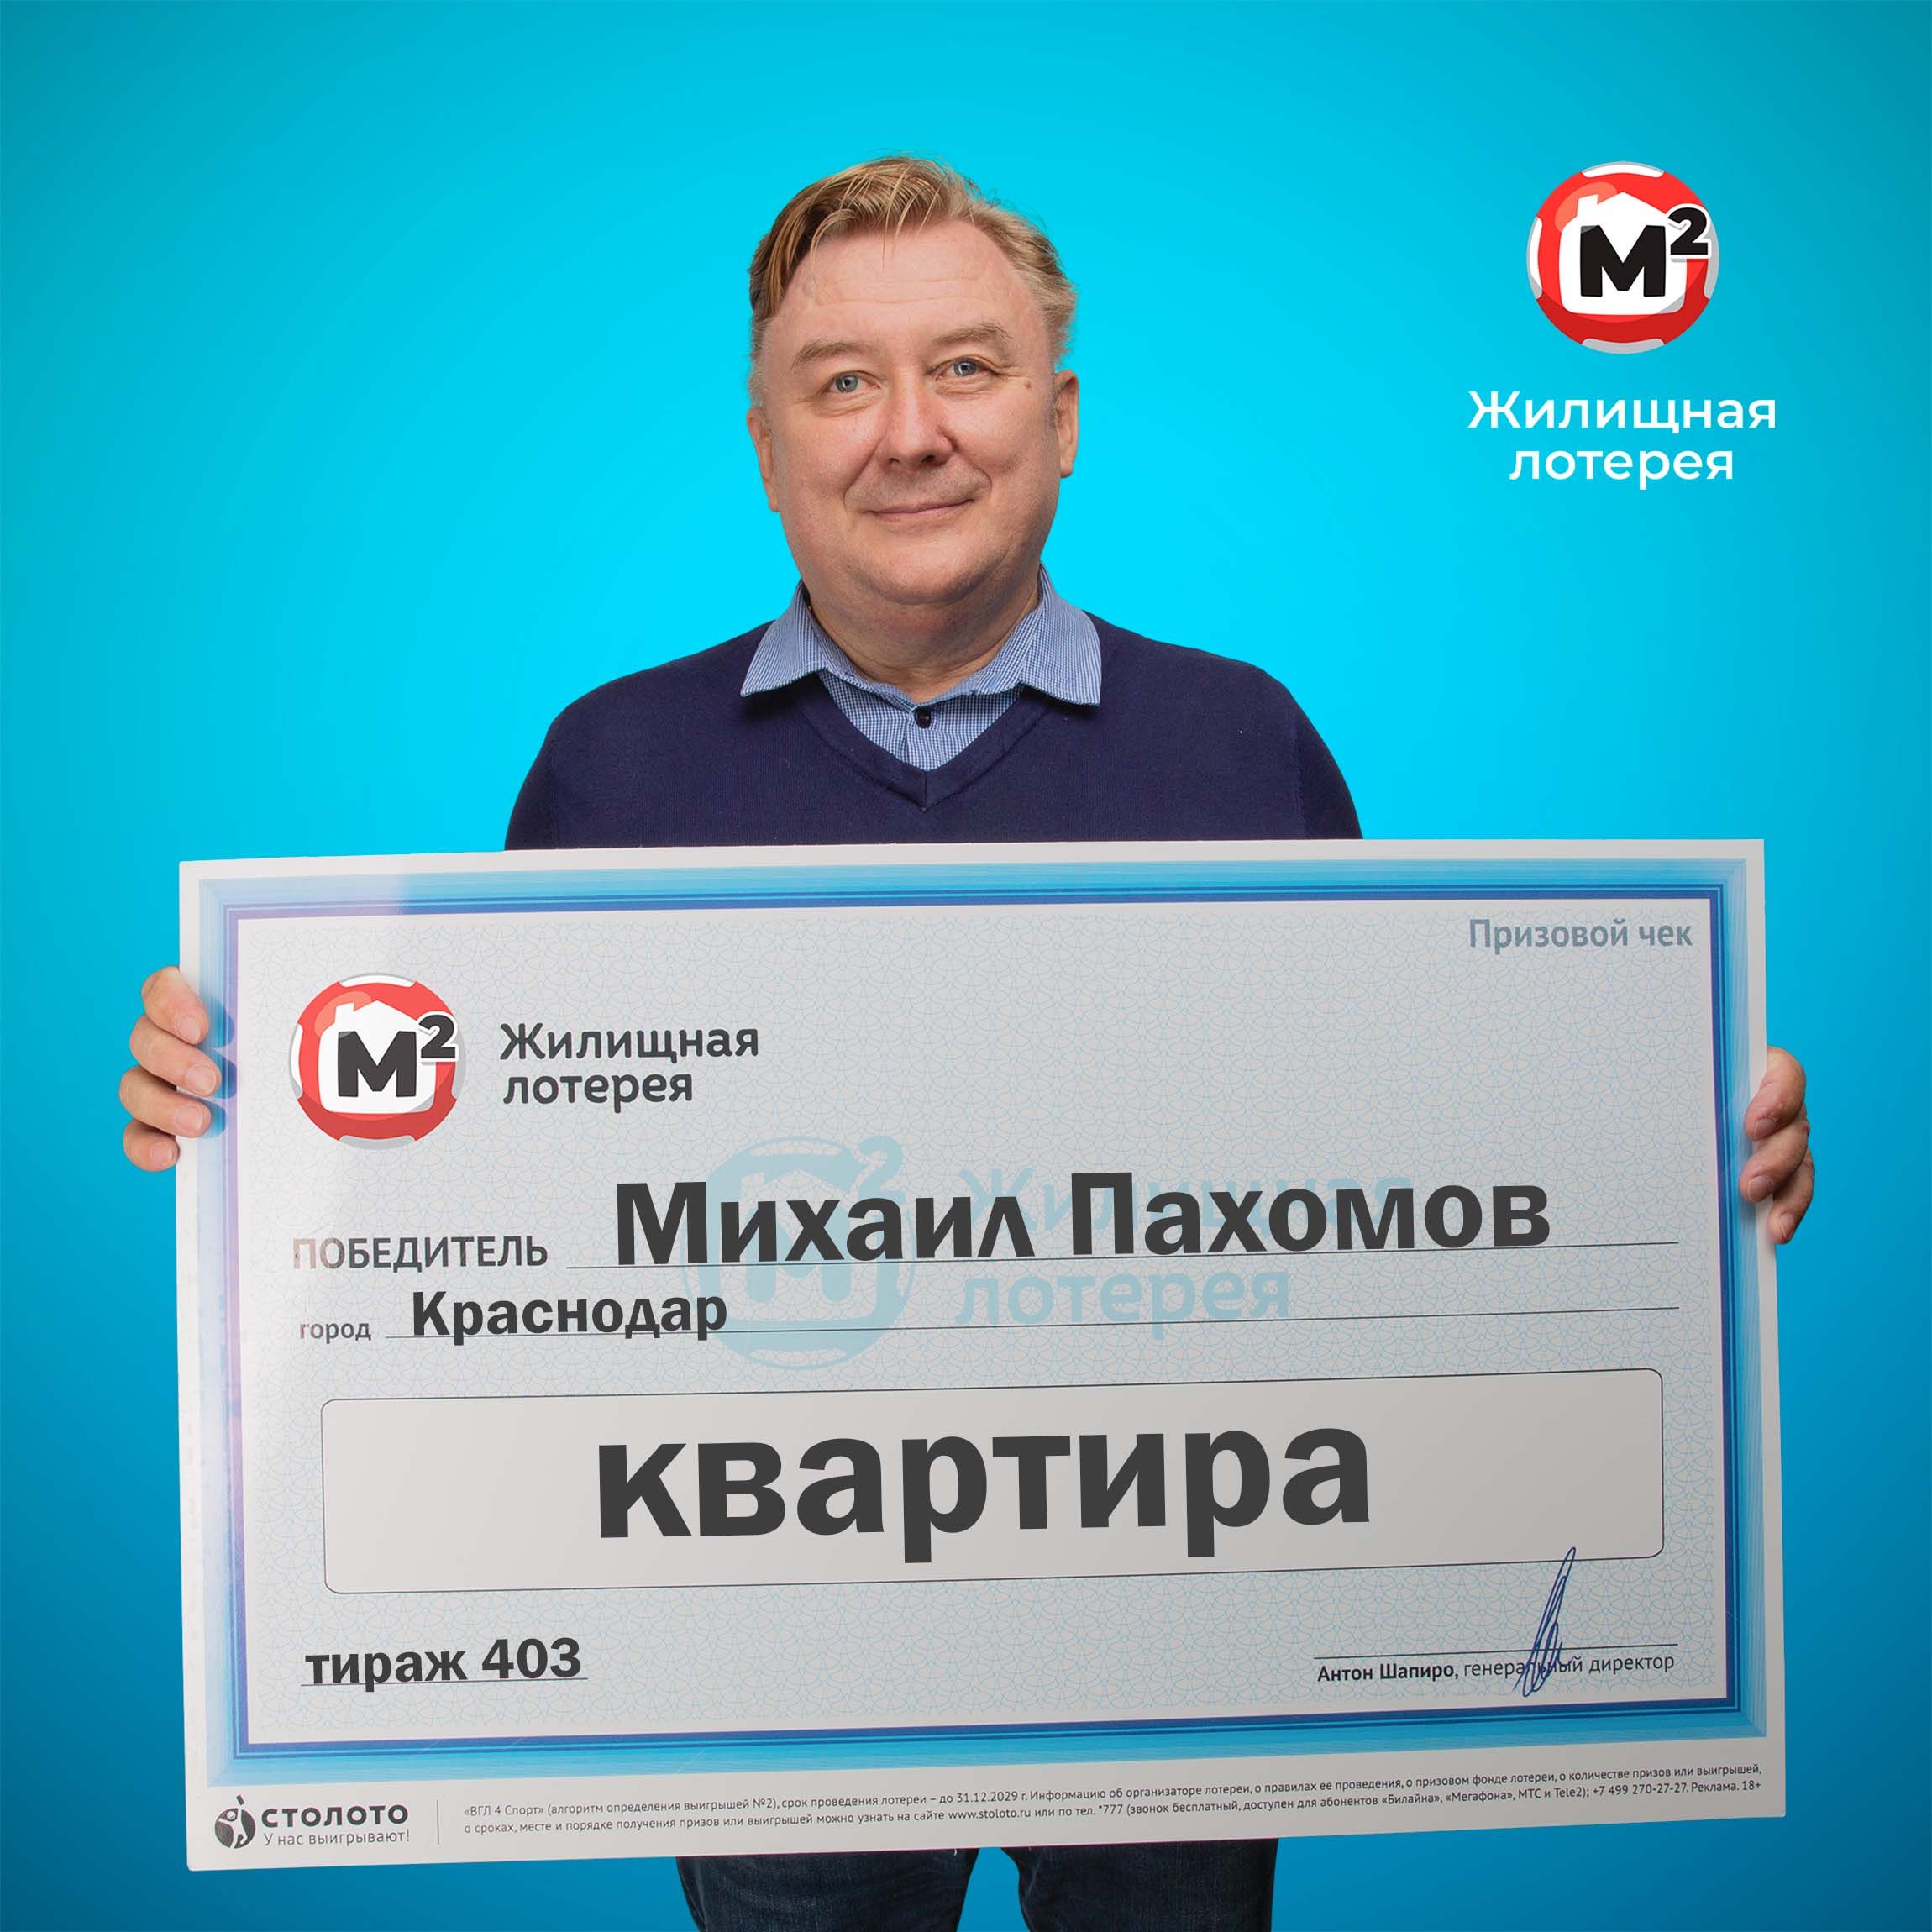 Михаил Пахомов, победитель «Жилищной лотереи»